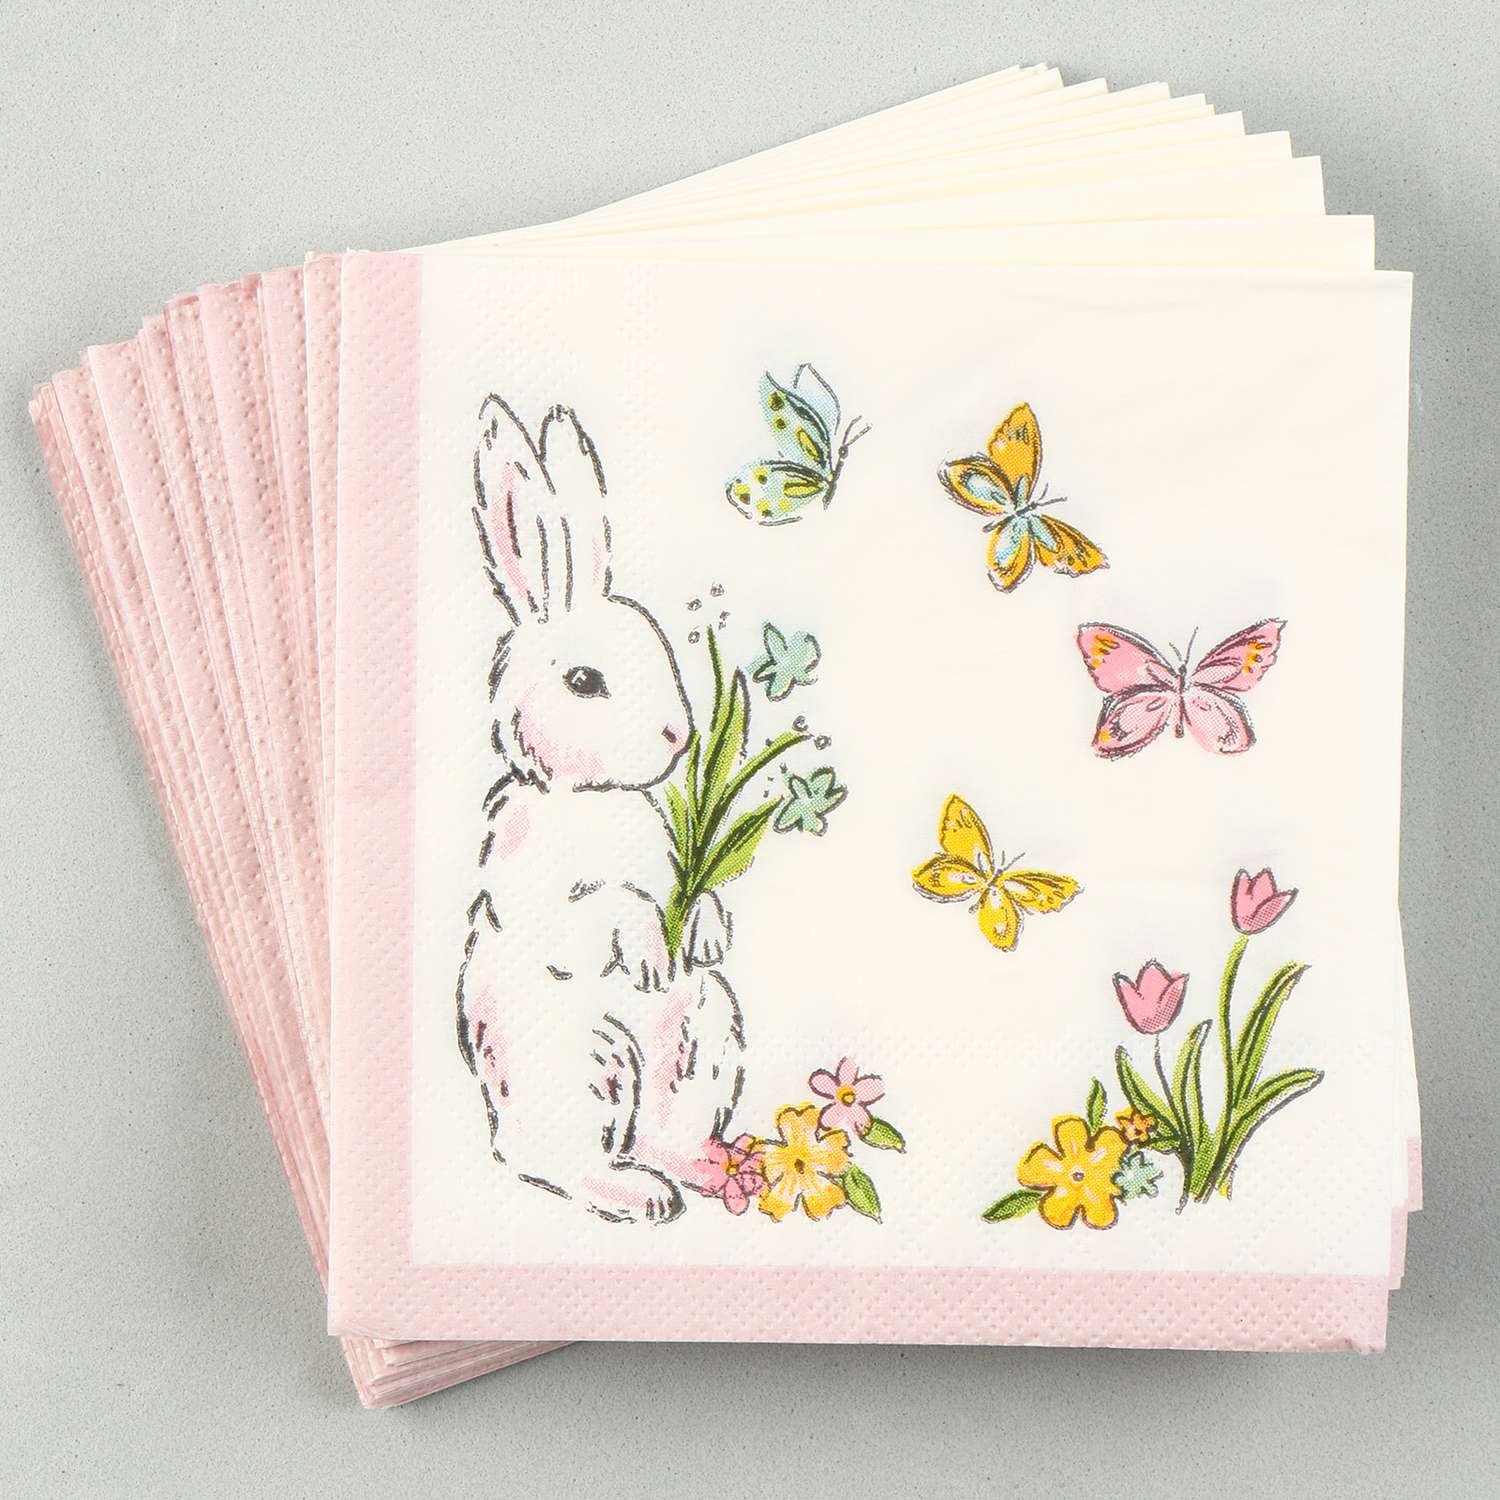 Салфетки Страна карнавалия бумажные «Кролик с бабочками» 25х25 см набор 20 шт. - фото 1